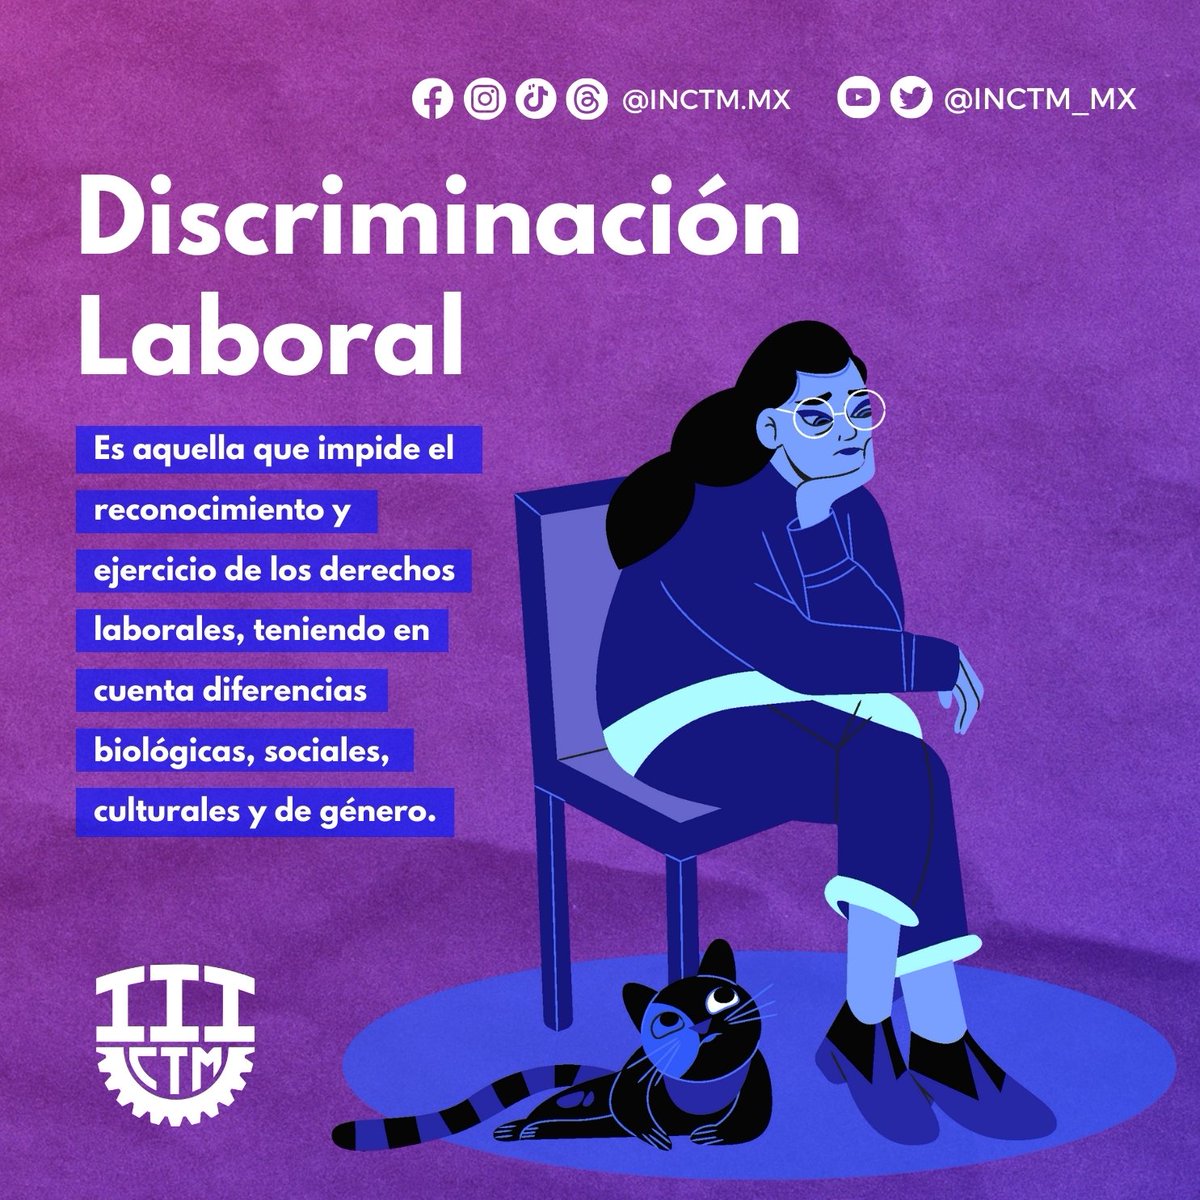 👊En el INCTM creemos que es posible contar con entornos laborales inclusivos y libres de discriminación. 🙌

🤝 Sumemos esfuerzos para erradicar cualquier forma de discriminación en los centros de trabajo. 🦺💼

#16DíasDeActivismo #16días #NoMásViolencia